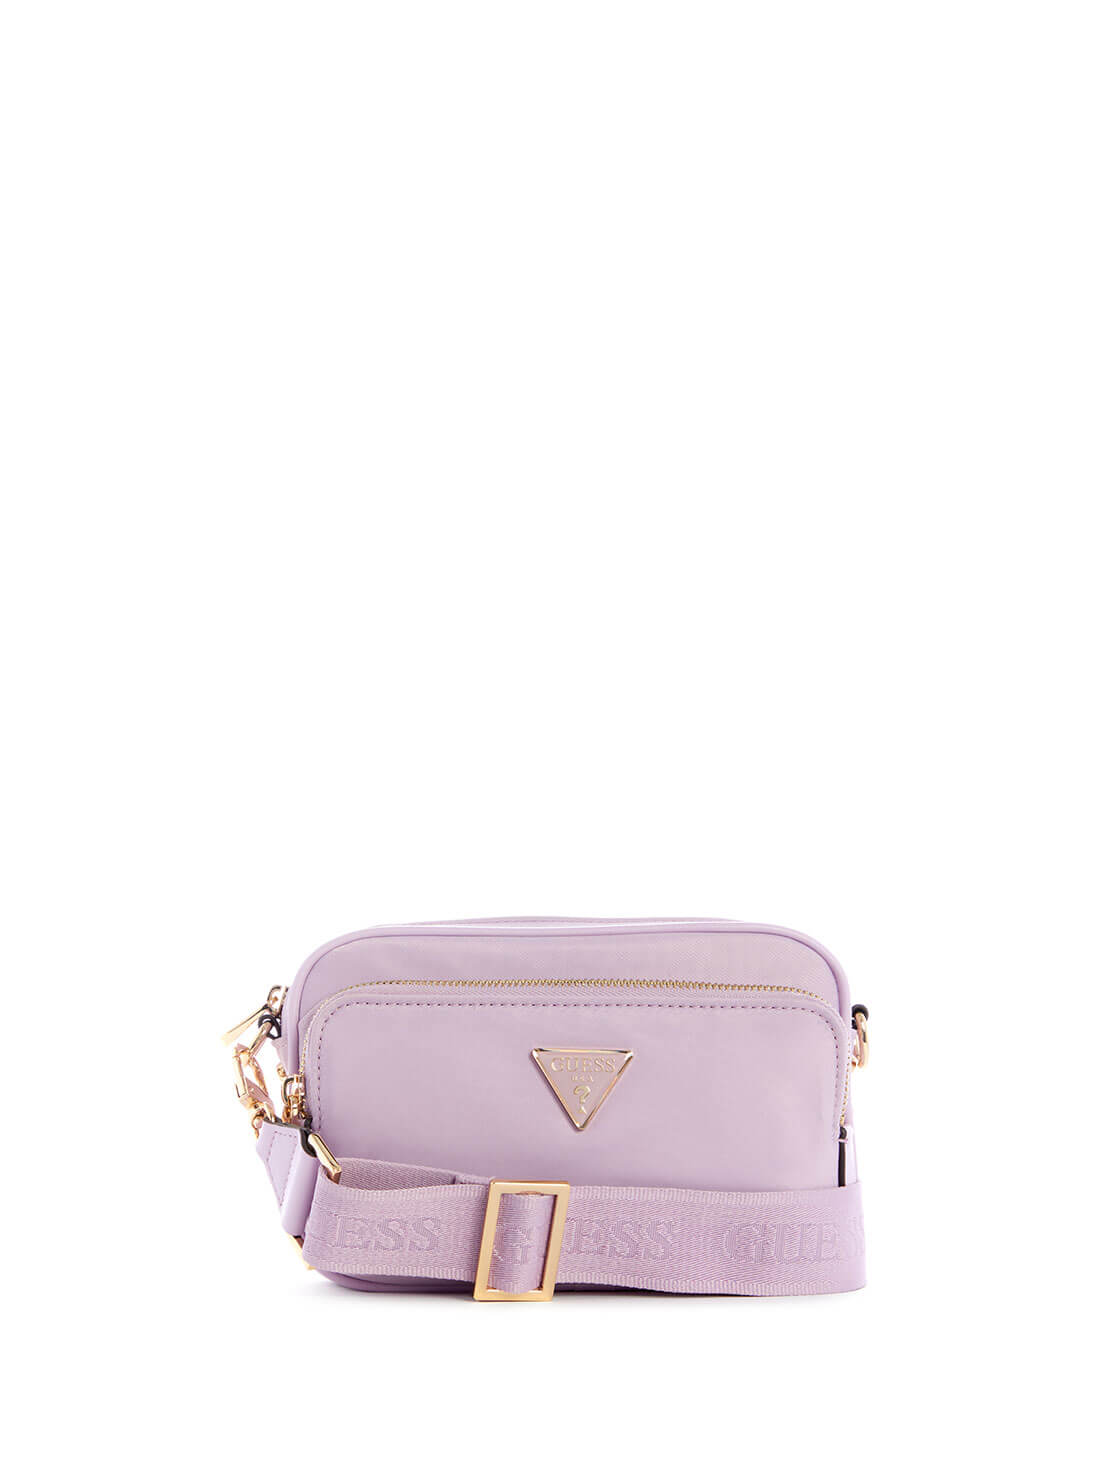 Light Purple Little Bay Crossbody Bag | GUESS Women's Handbags | front view